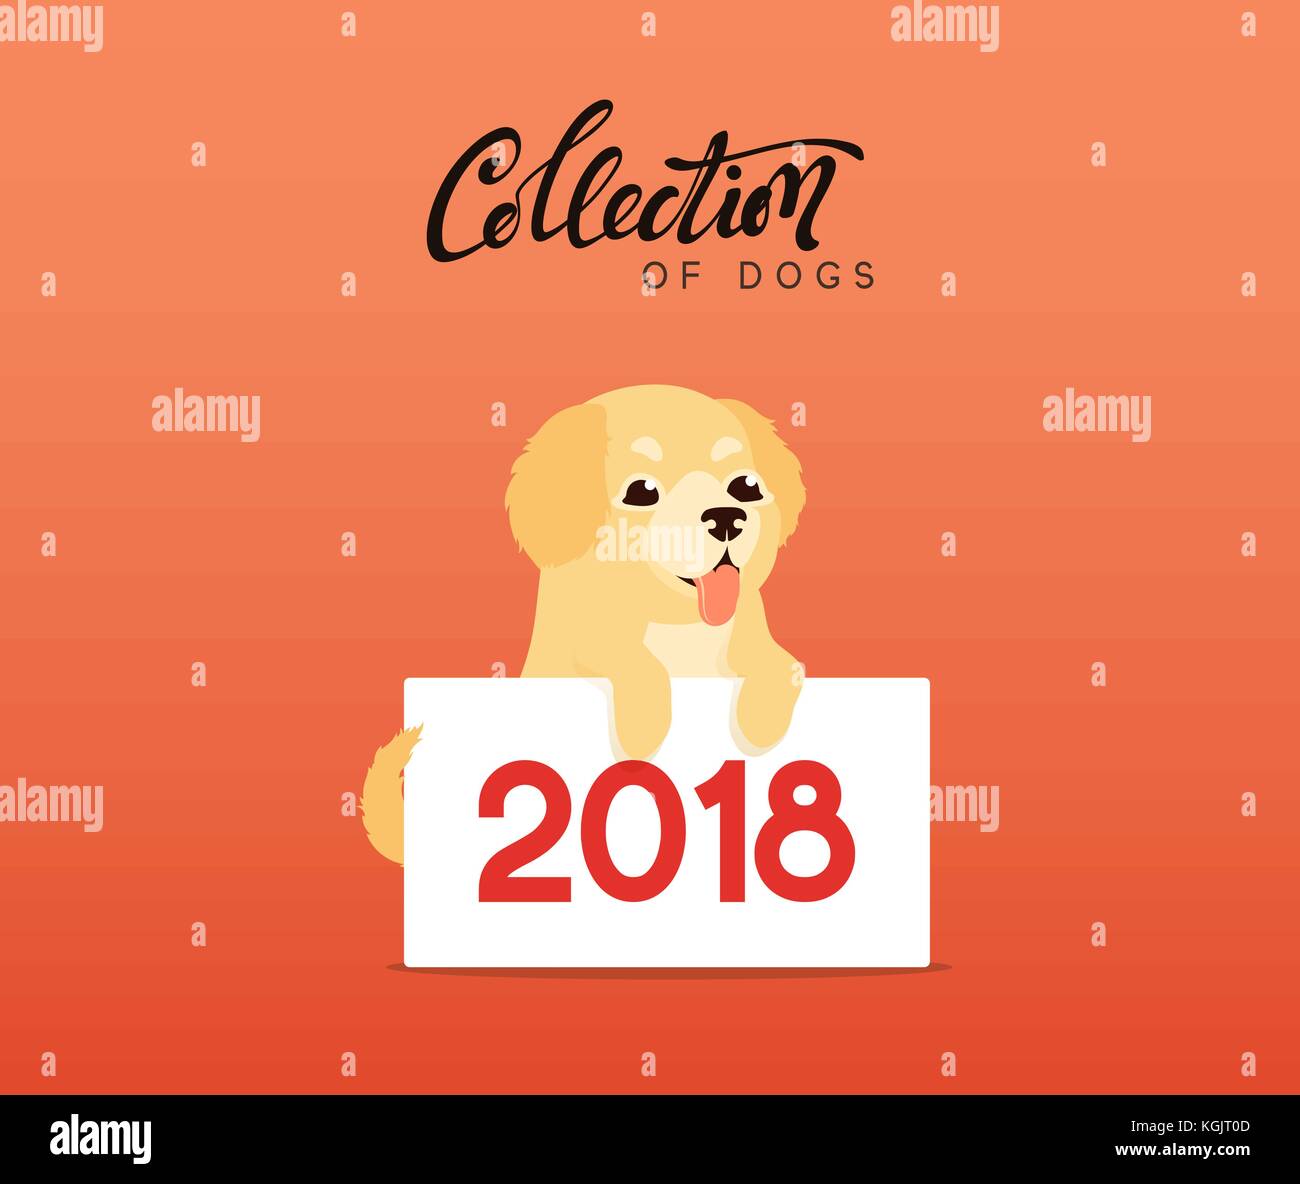 Süße Hunde Labrador und Golden Retriever. flachbild Tier Zeichentrickfigur Stock Vektor